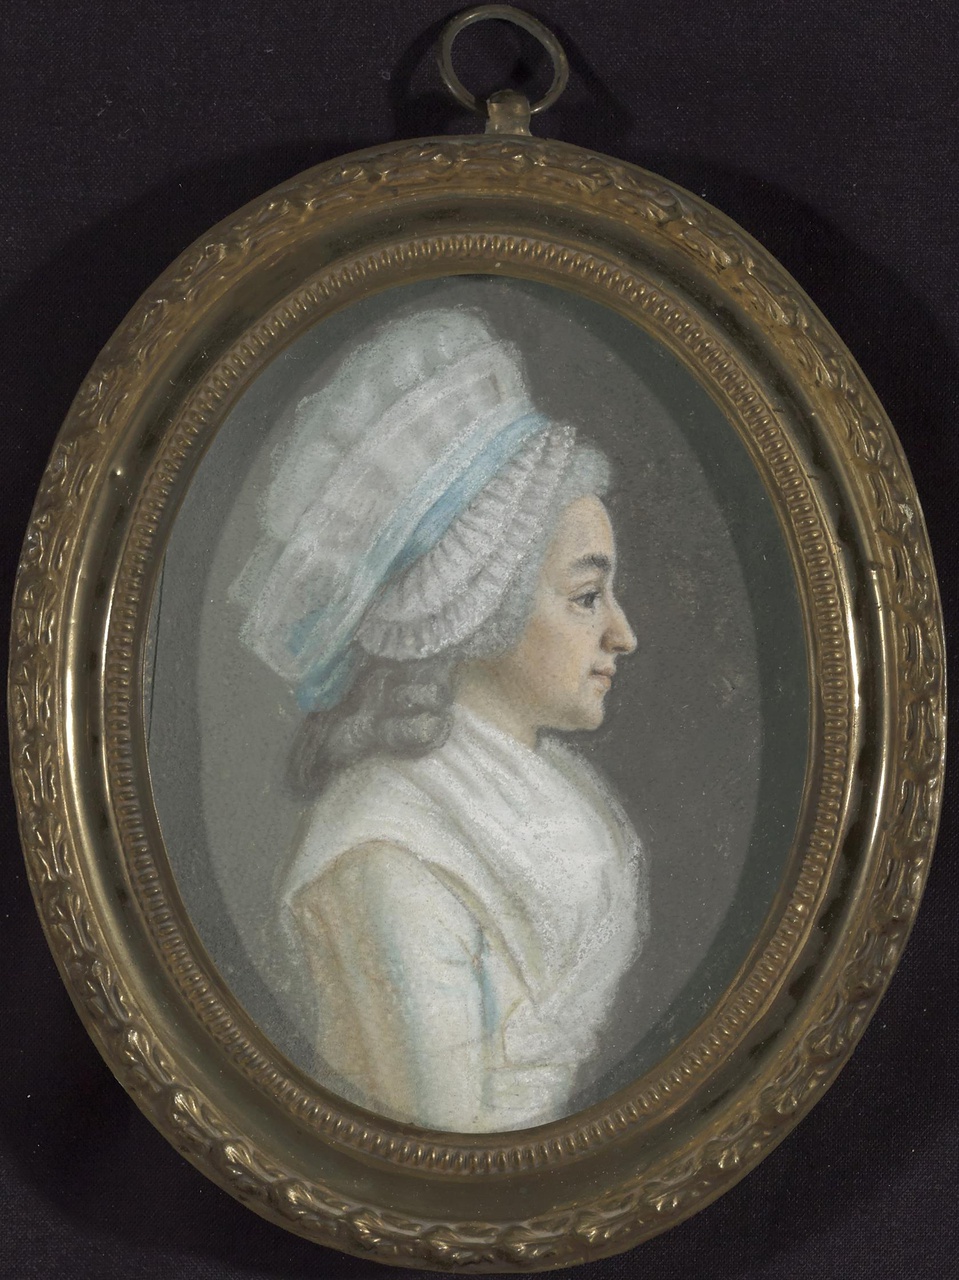 Portret van een vrouw uit de familie Martens